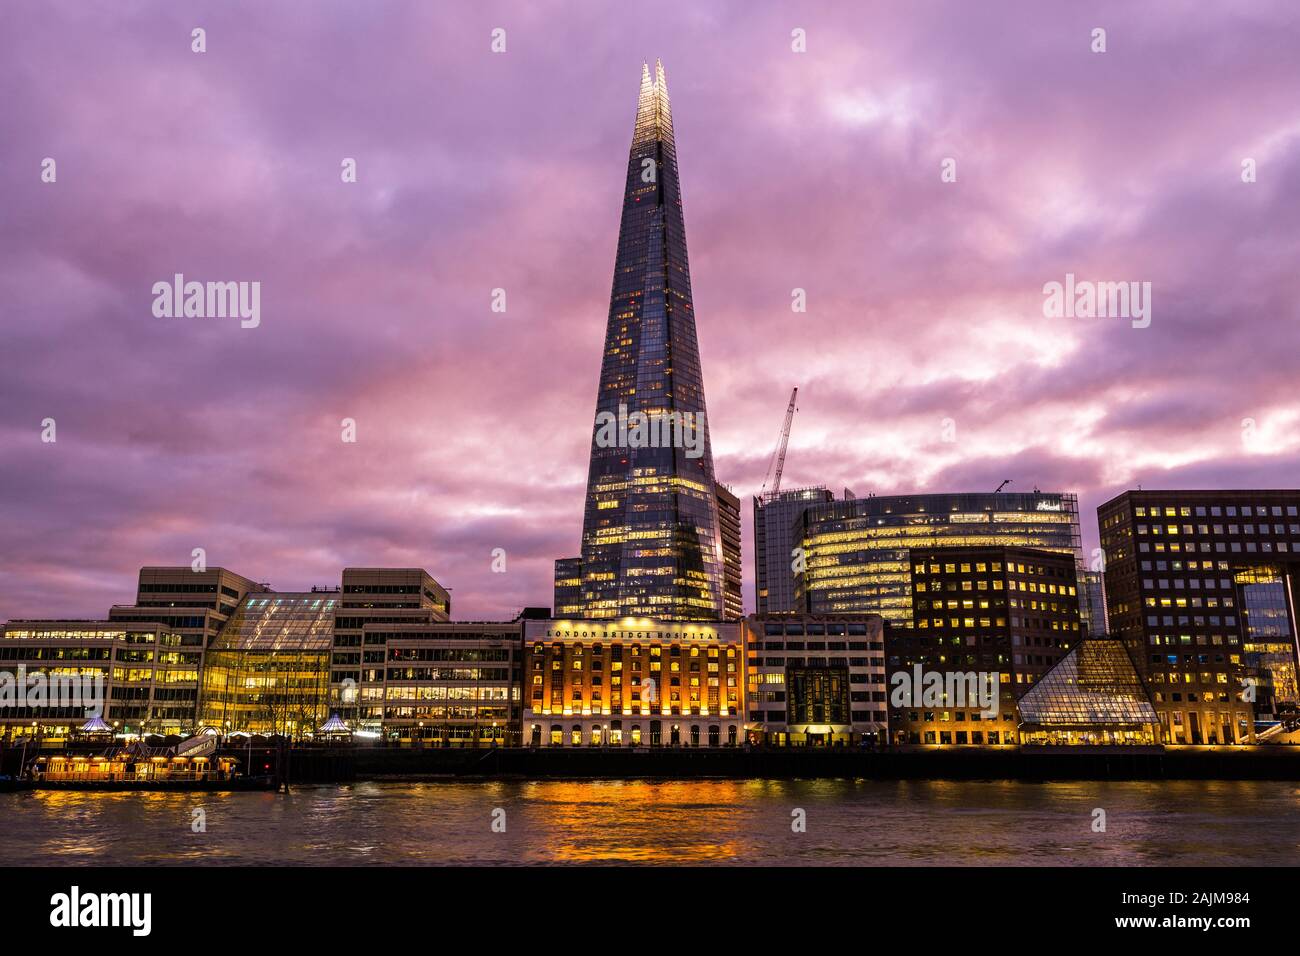 Der Shard, oder die Glasscherbe, bei Sonnenuntergang, bei Dämmerung, goldene Stunde ist ein 95-stöckiges Hochhaus, supertall Skyline von London Southwark, London England Großbritannien Stockfoto